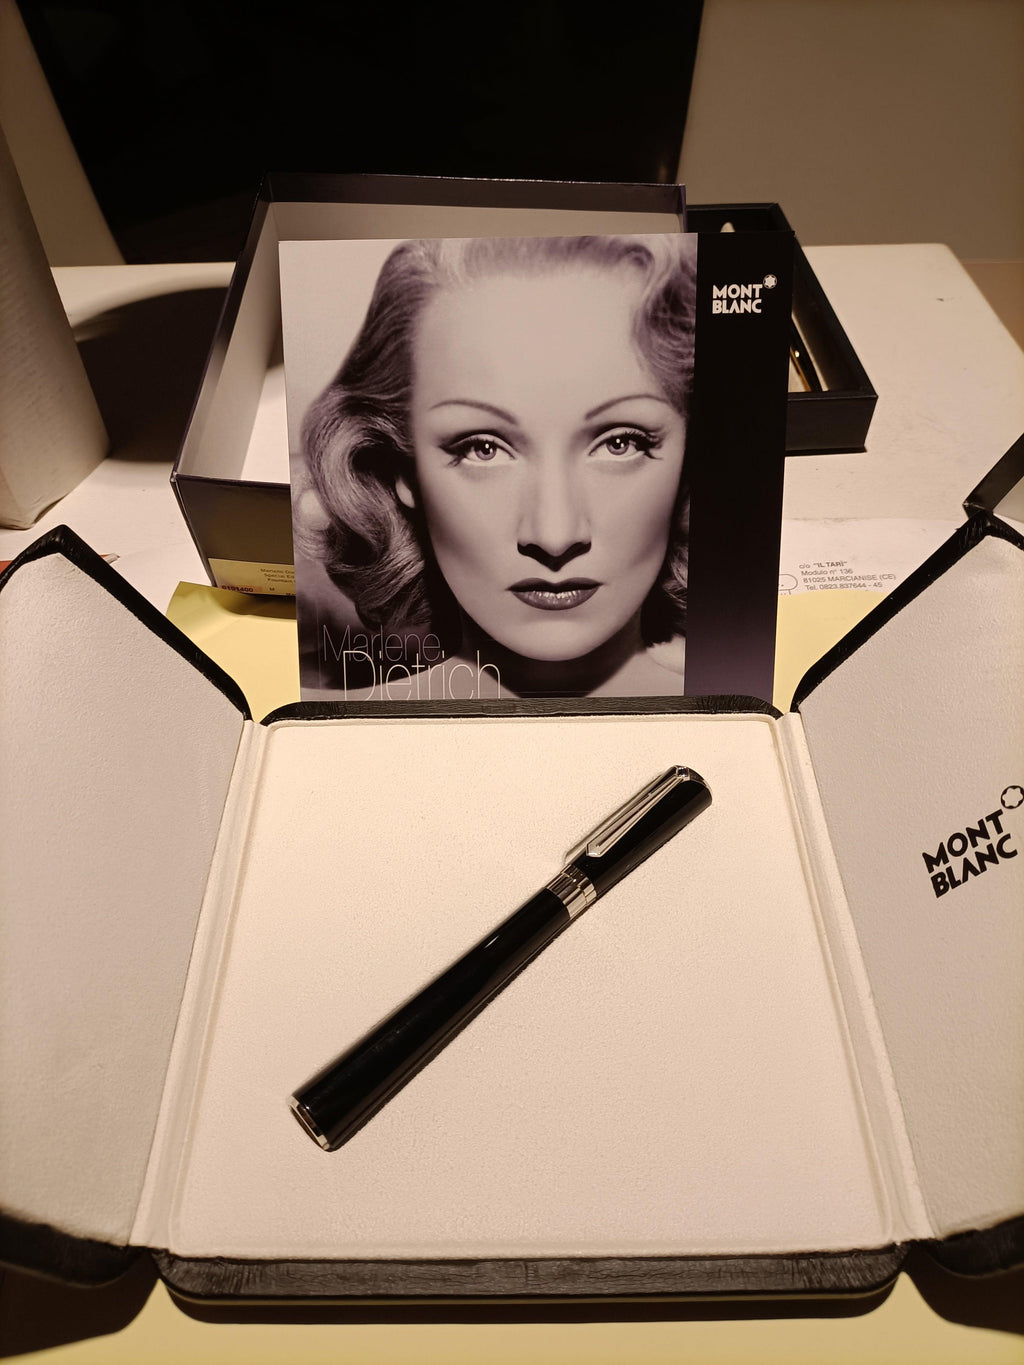 Montblanc Marlene Dietrich - Mendes Gioielli srl